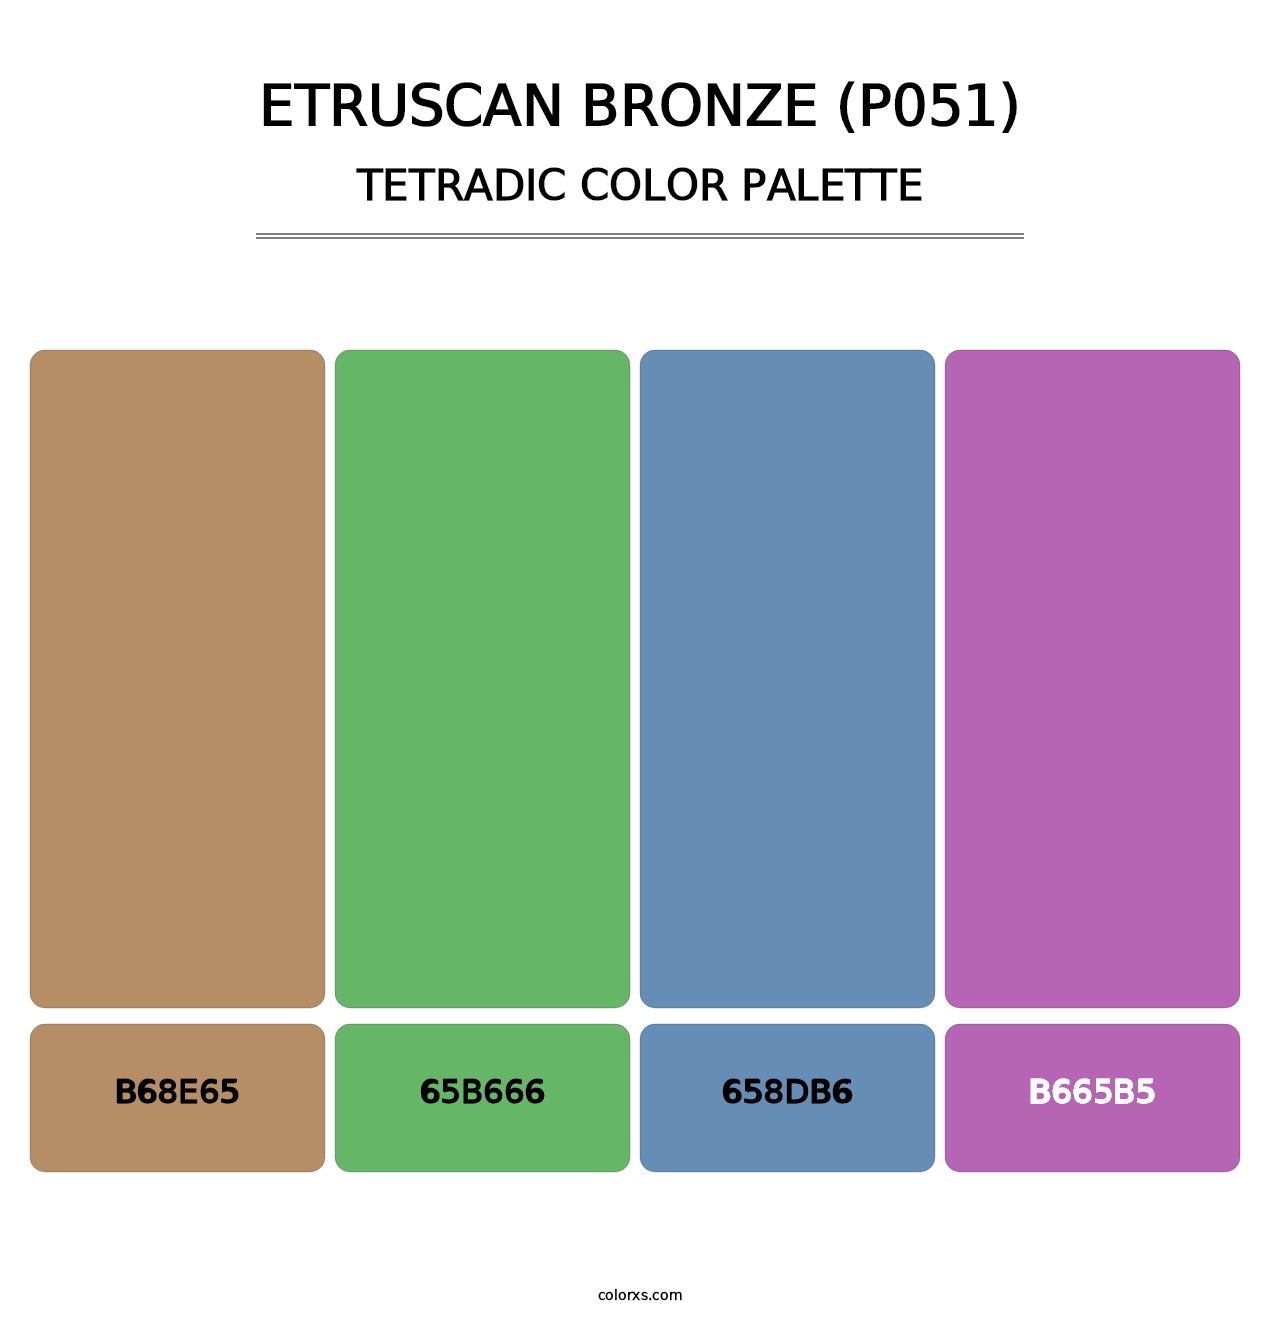 Etruscan Bronze (P051) - Tetradic Color Palette